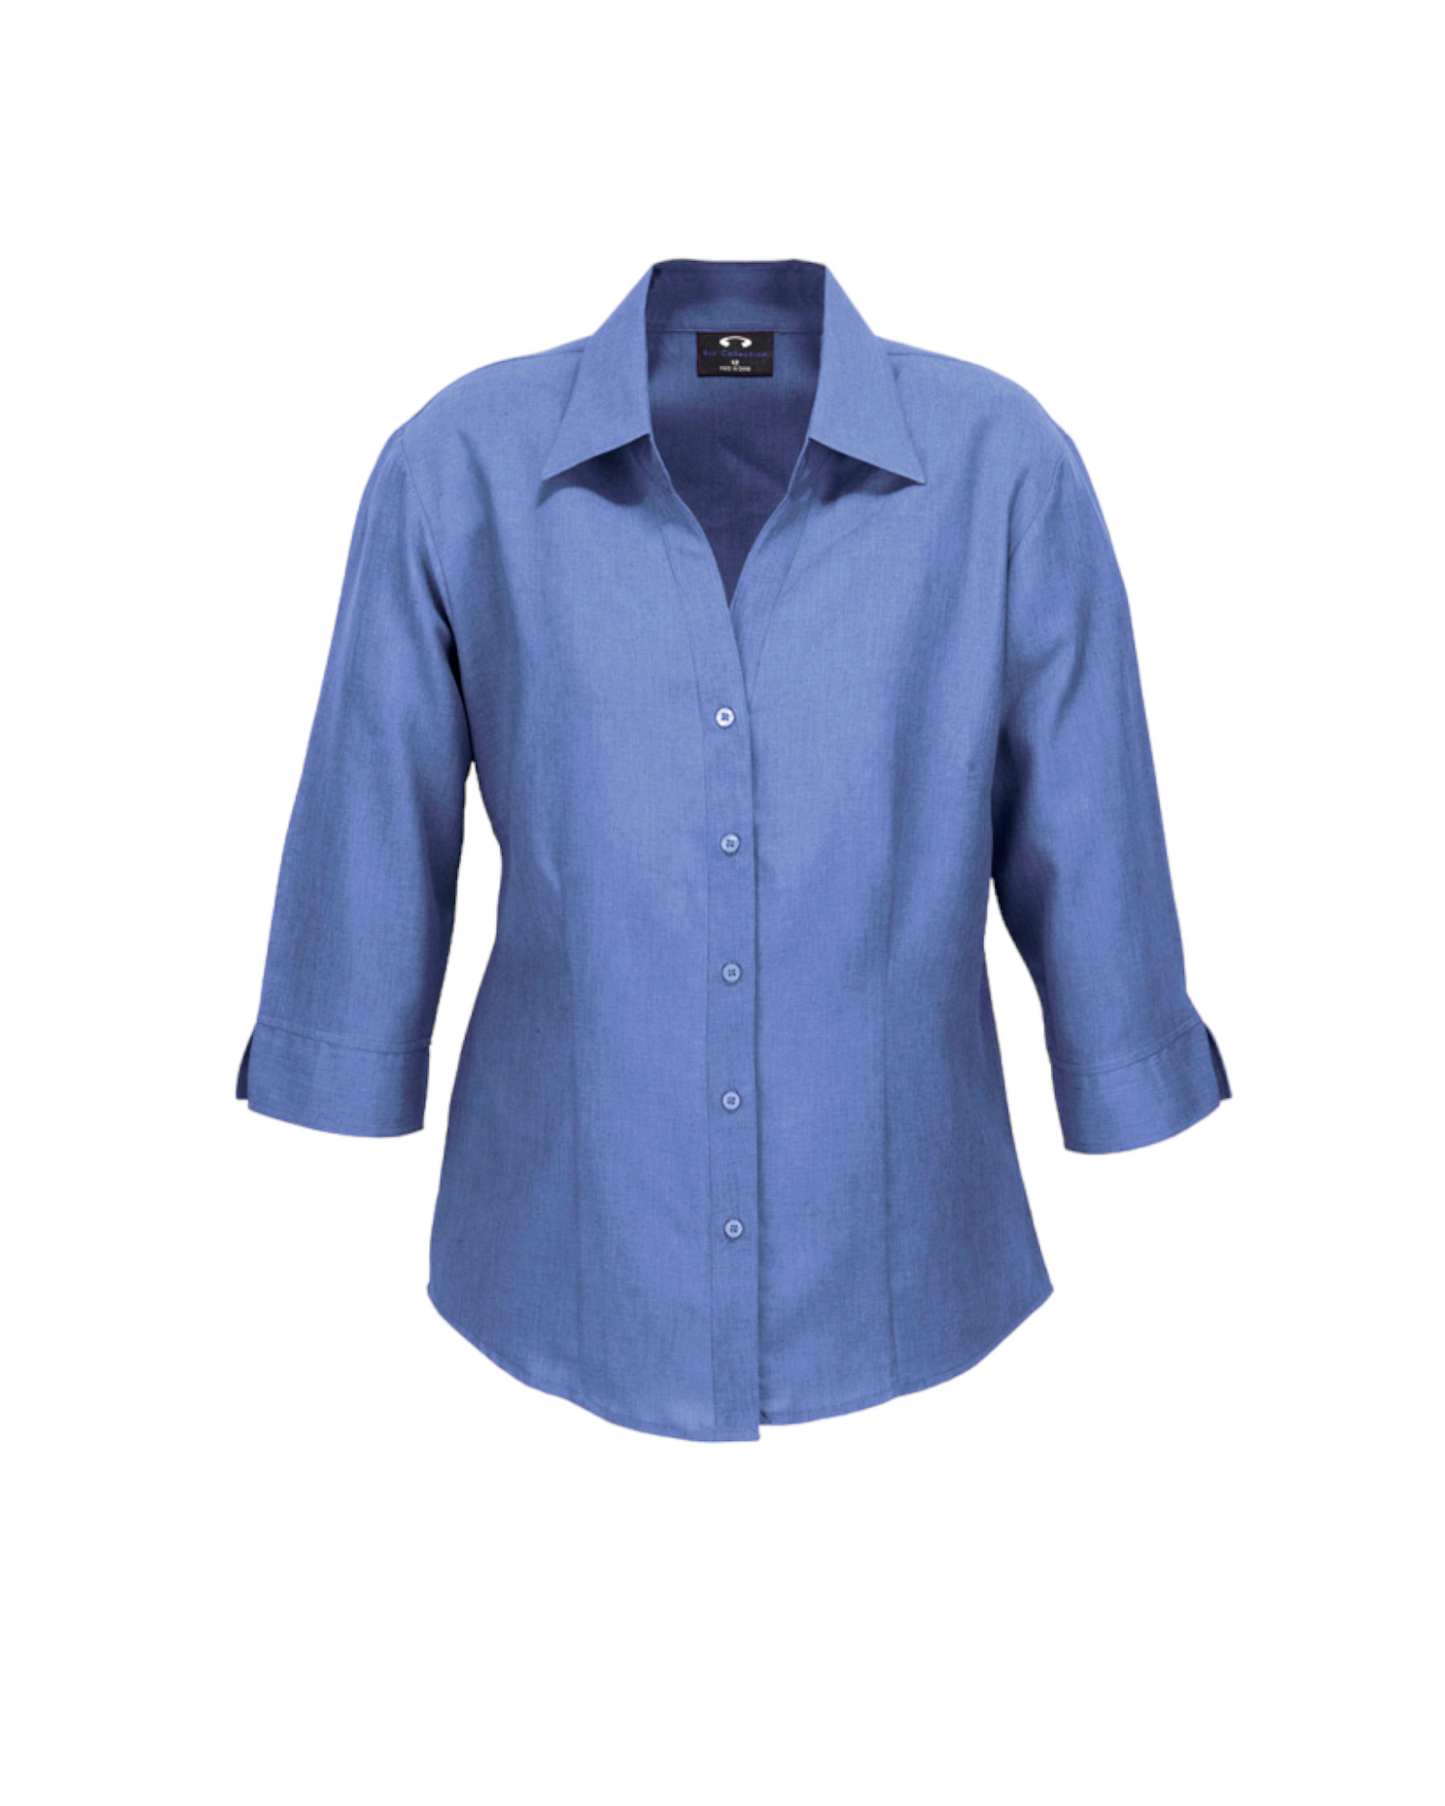 Chemise à manches 3/4 Oasis unie pour femmes Fashion Biz #LB3600